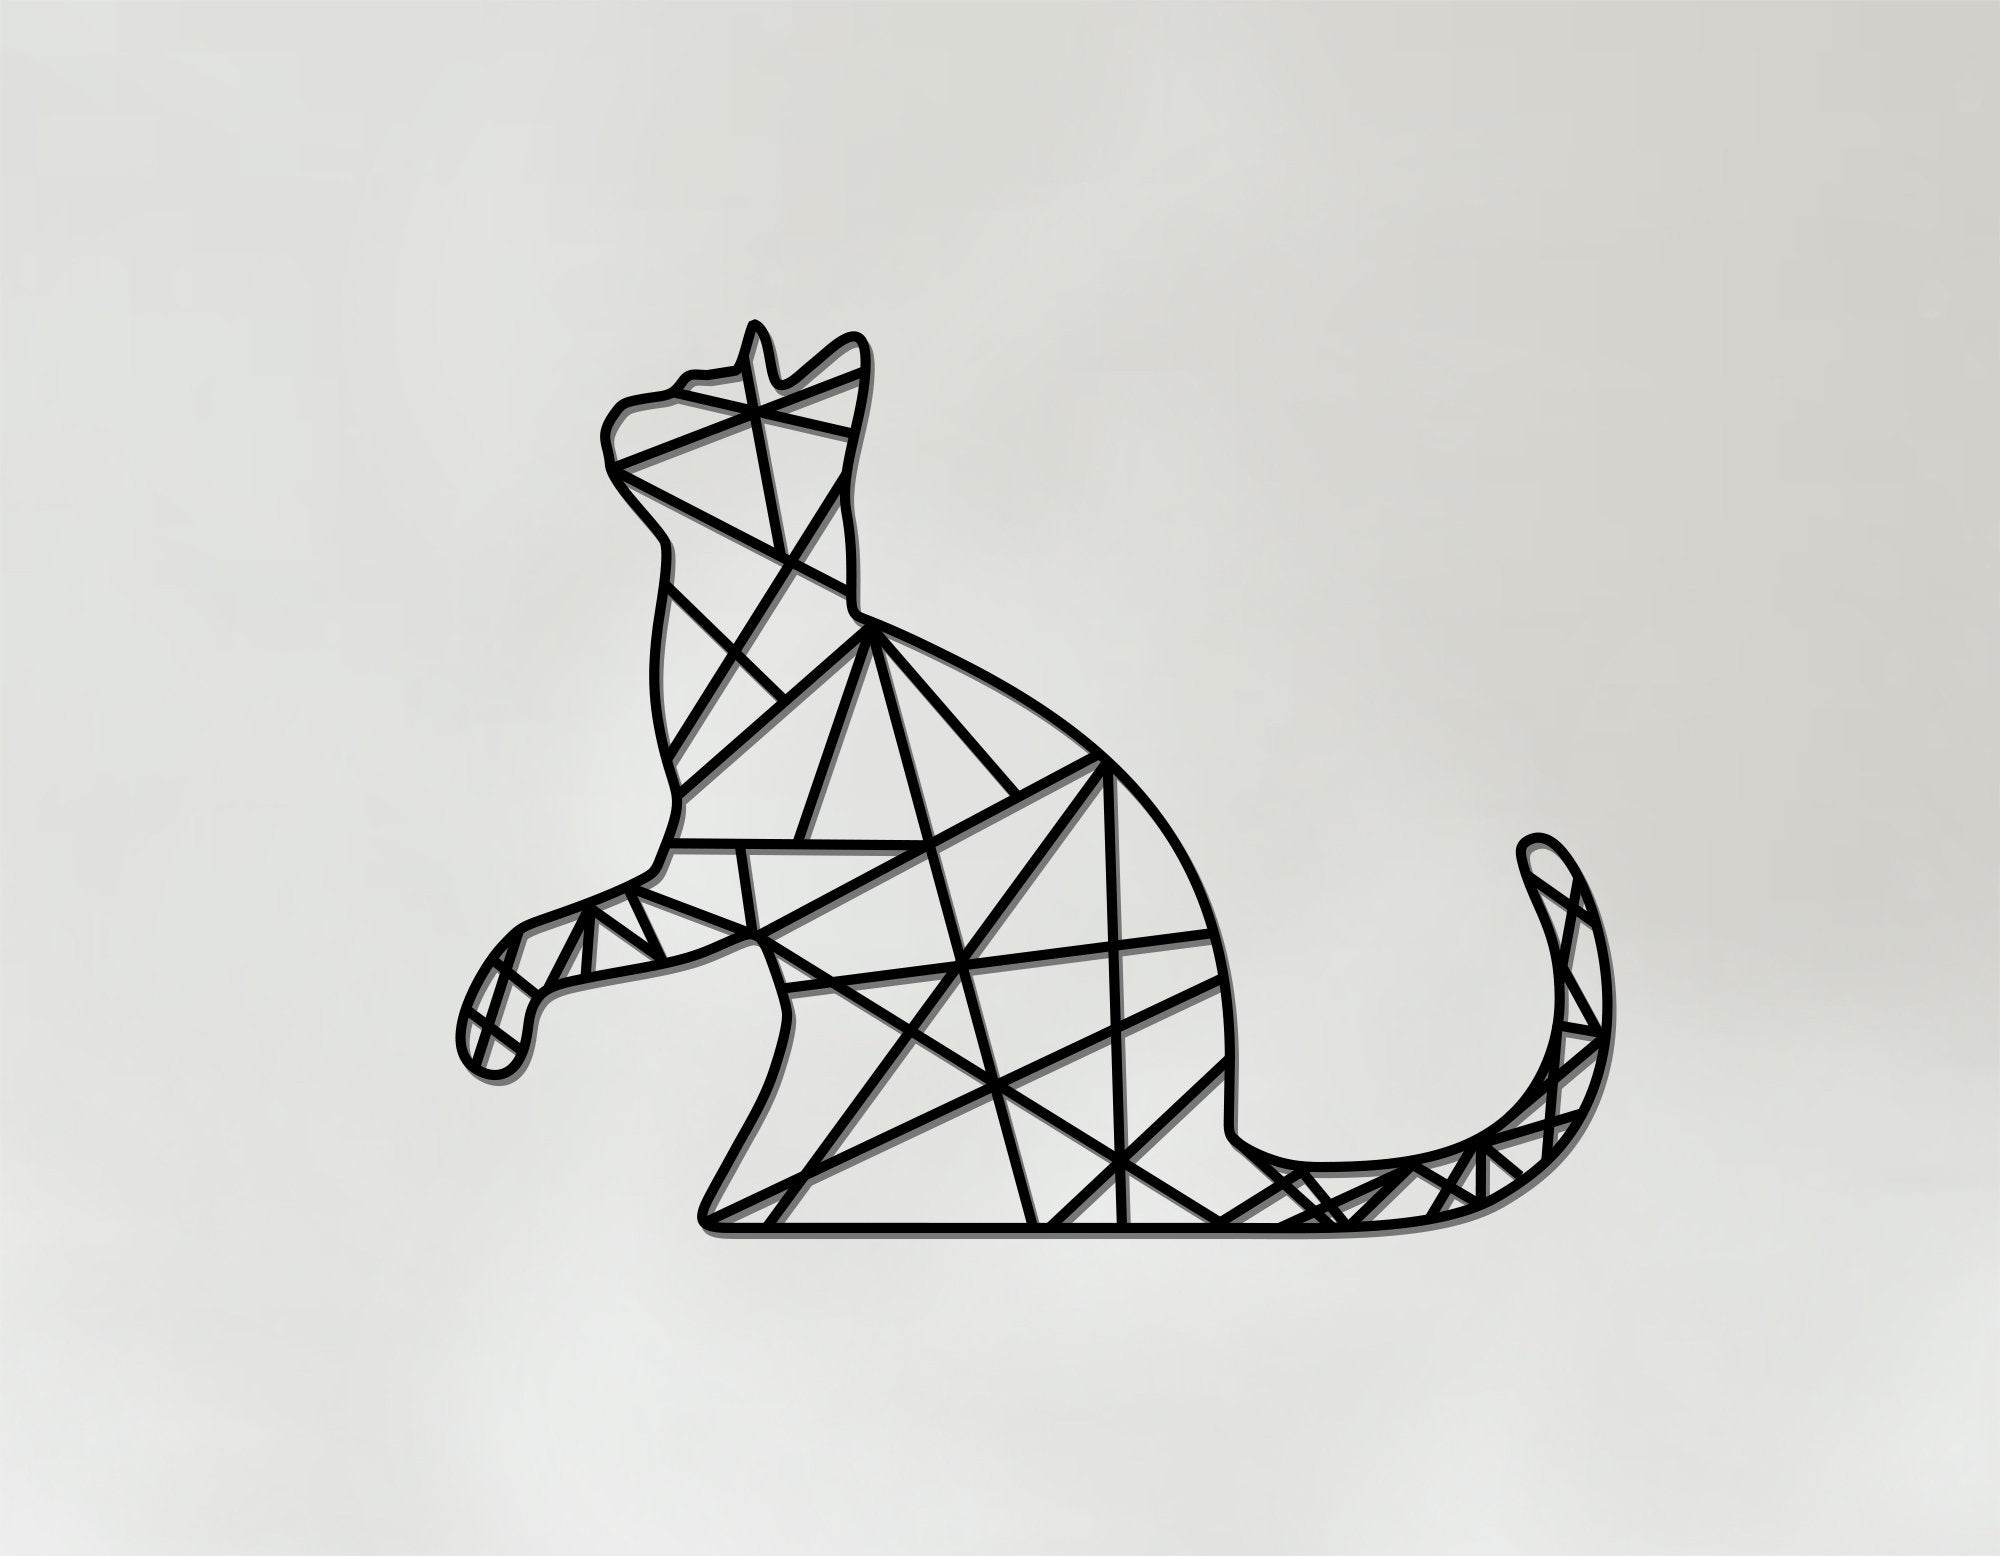 Geometric Cat Art - Wooden Wall Art - Cat Lover Gift